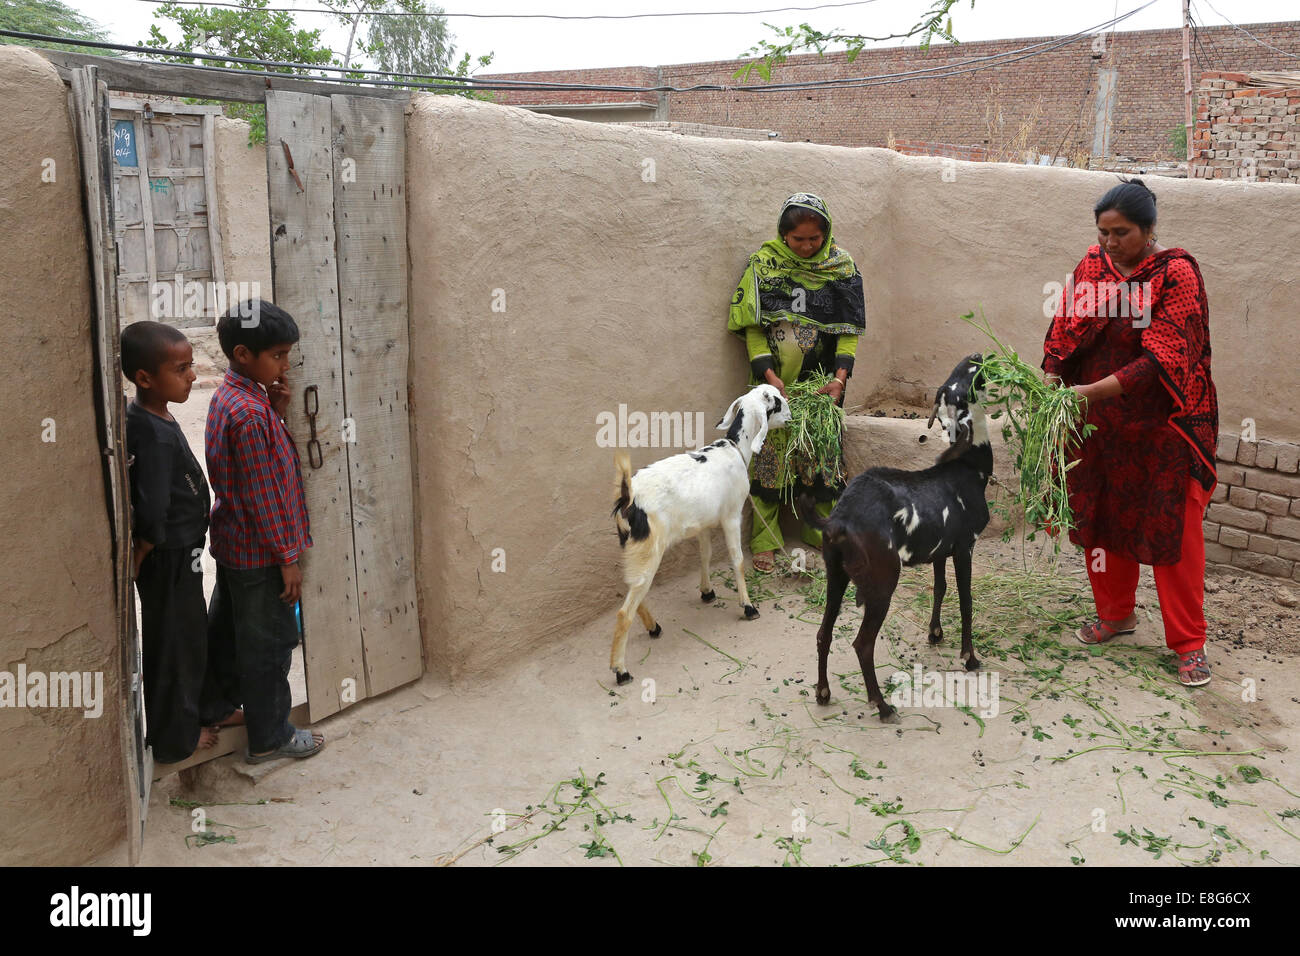 L'alimentation des femmes de caprins dans les arrière-cours de leurs maisons. Village près de Faisalabad, Pakistan. Banque D'Images